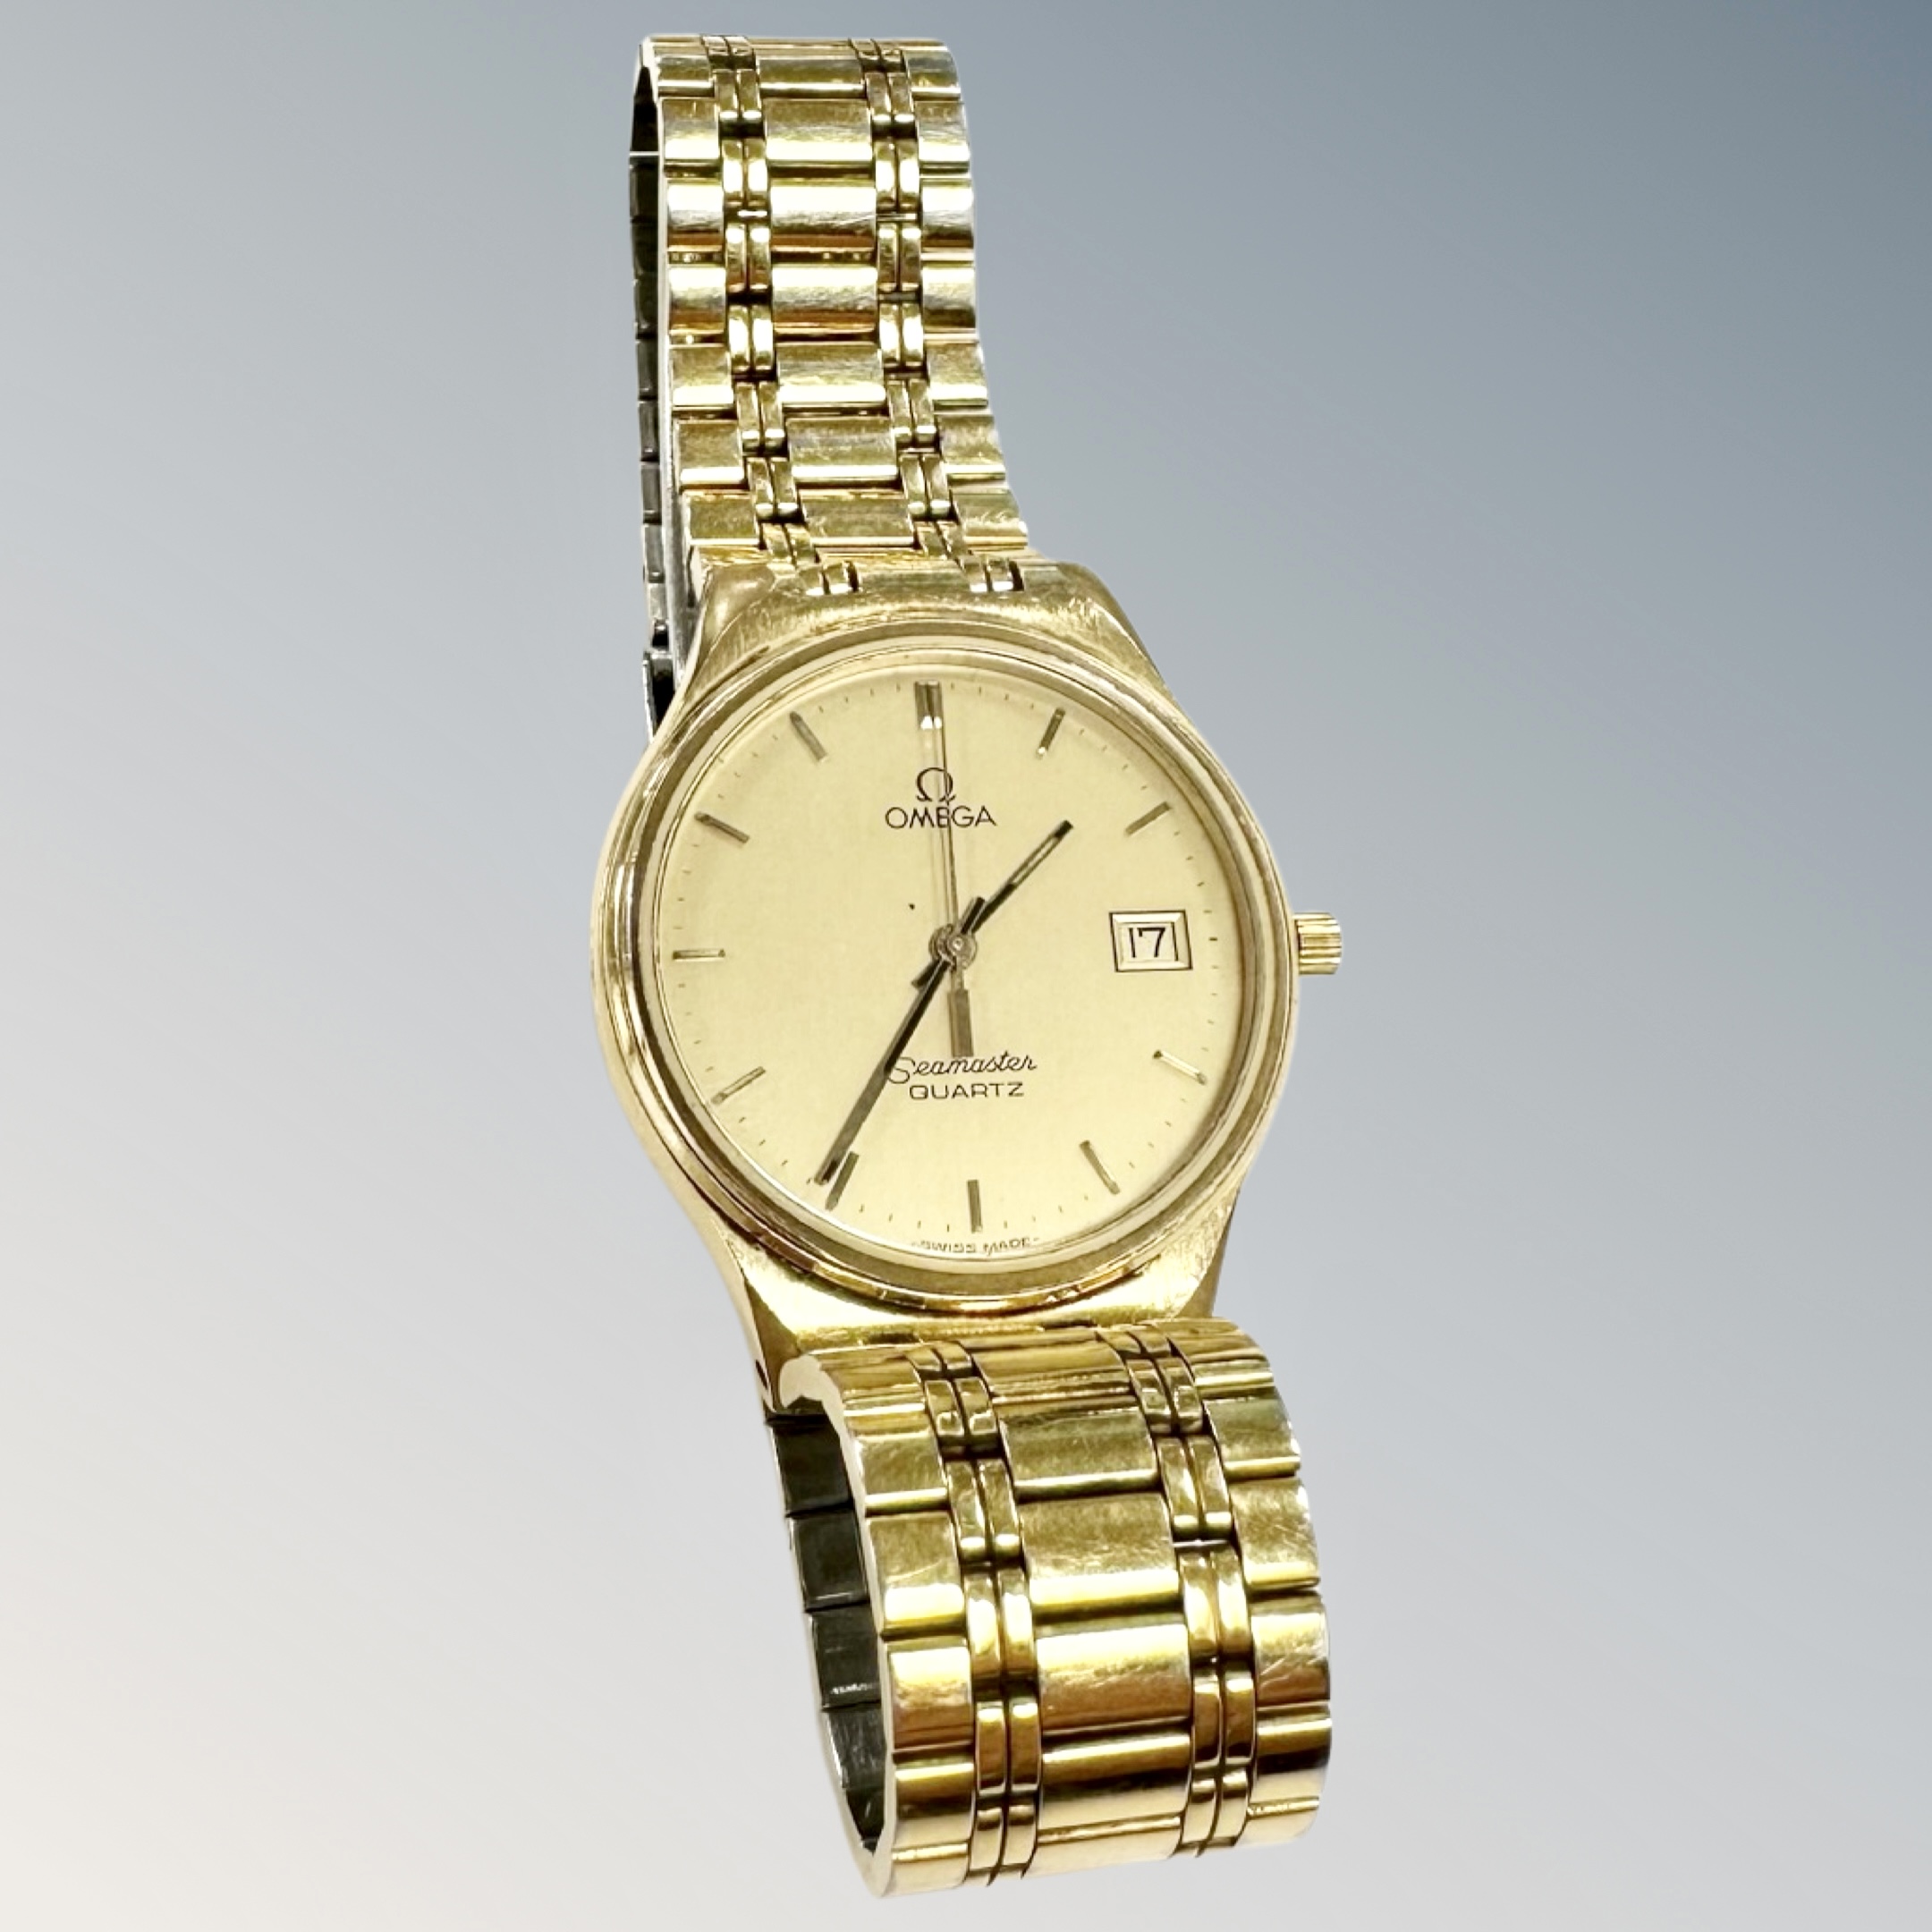 A gent's gold plated Omega Seamaster quartz calendar wristwatch, on Omega bracelet, case 31mm.